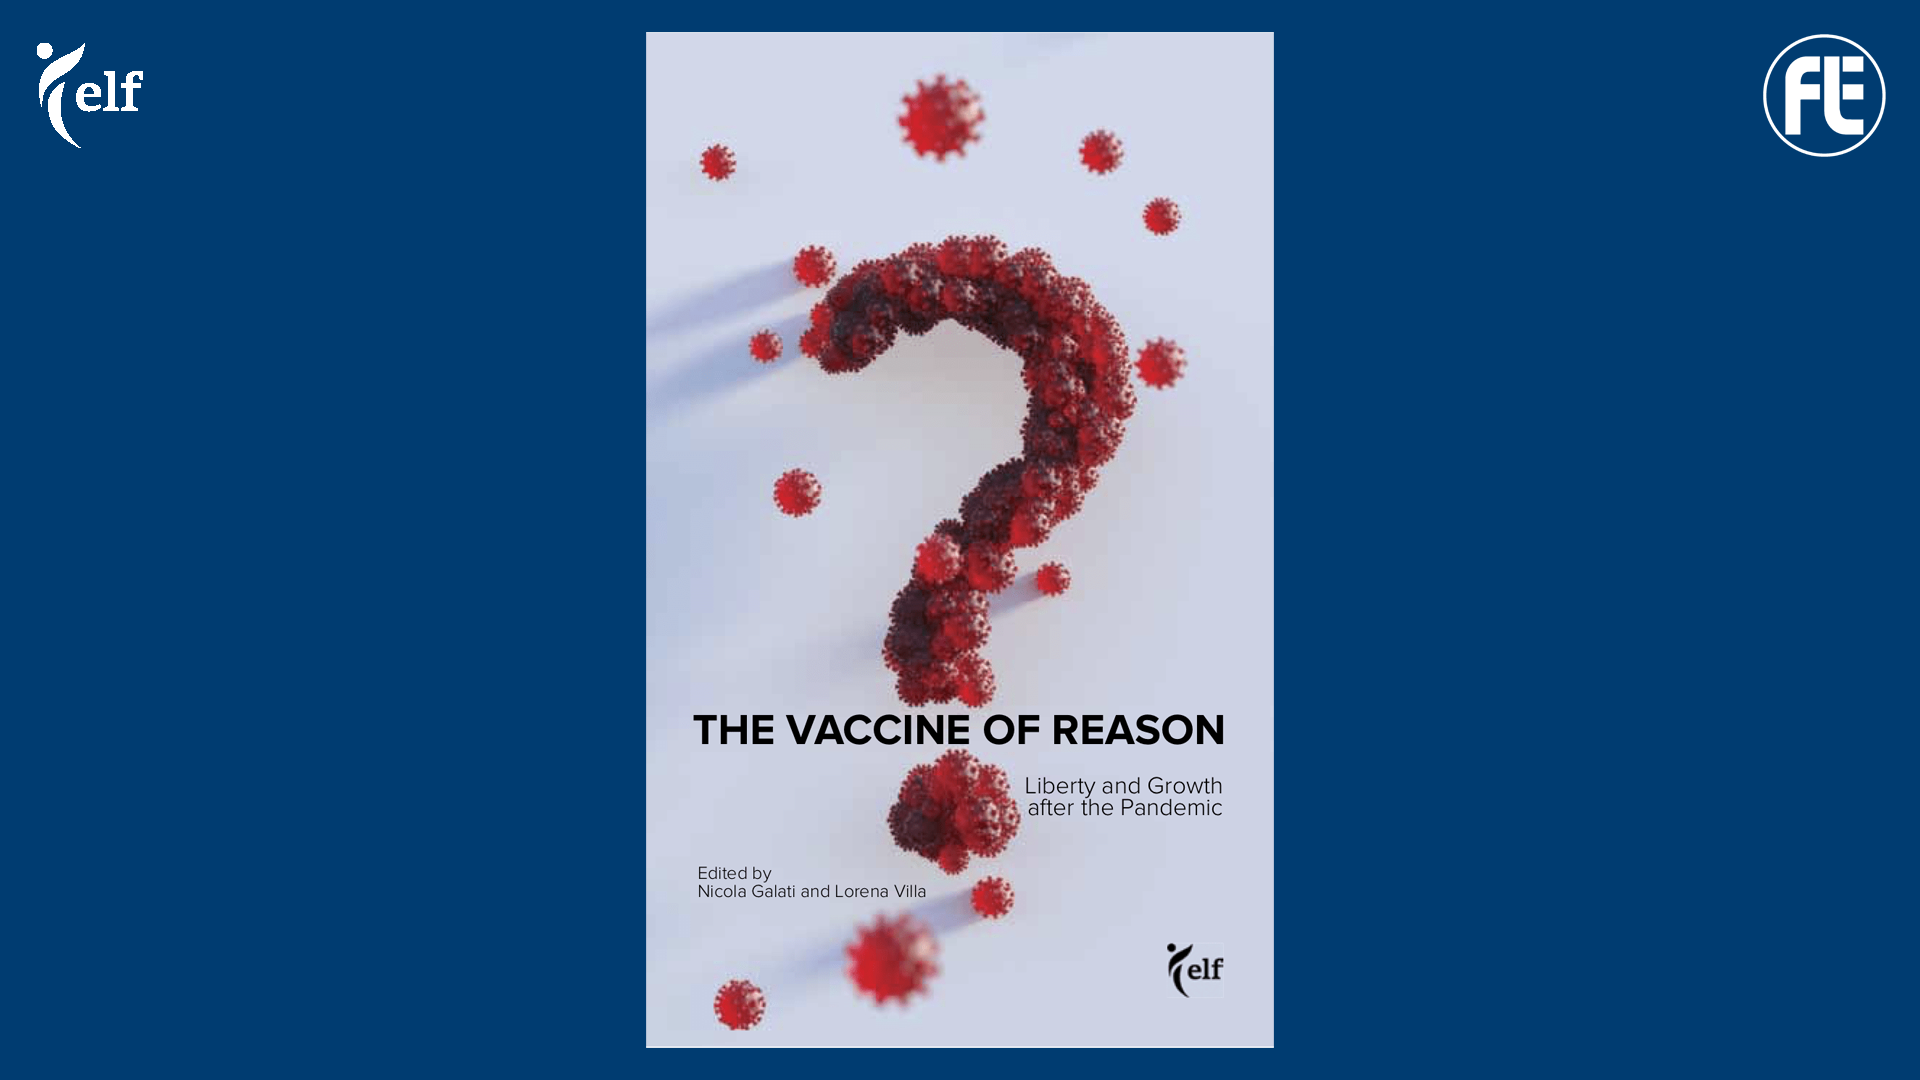 Traduzione del libro “Il Vaccino della Ragione” in collaborazione con #ELF – European Liberal Forum